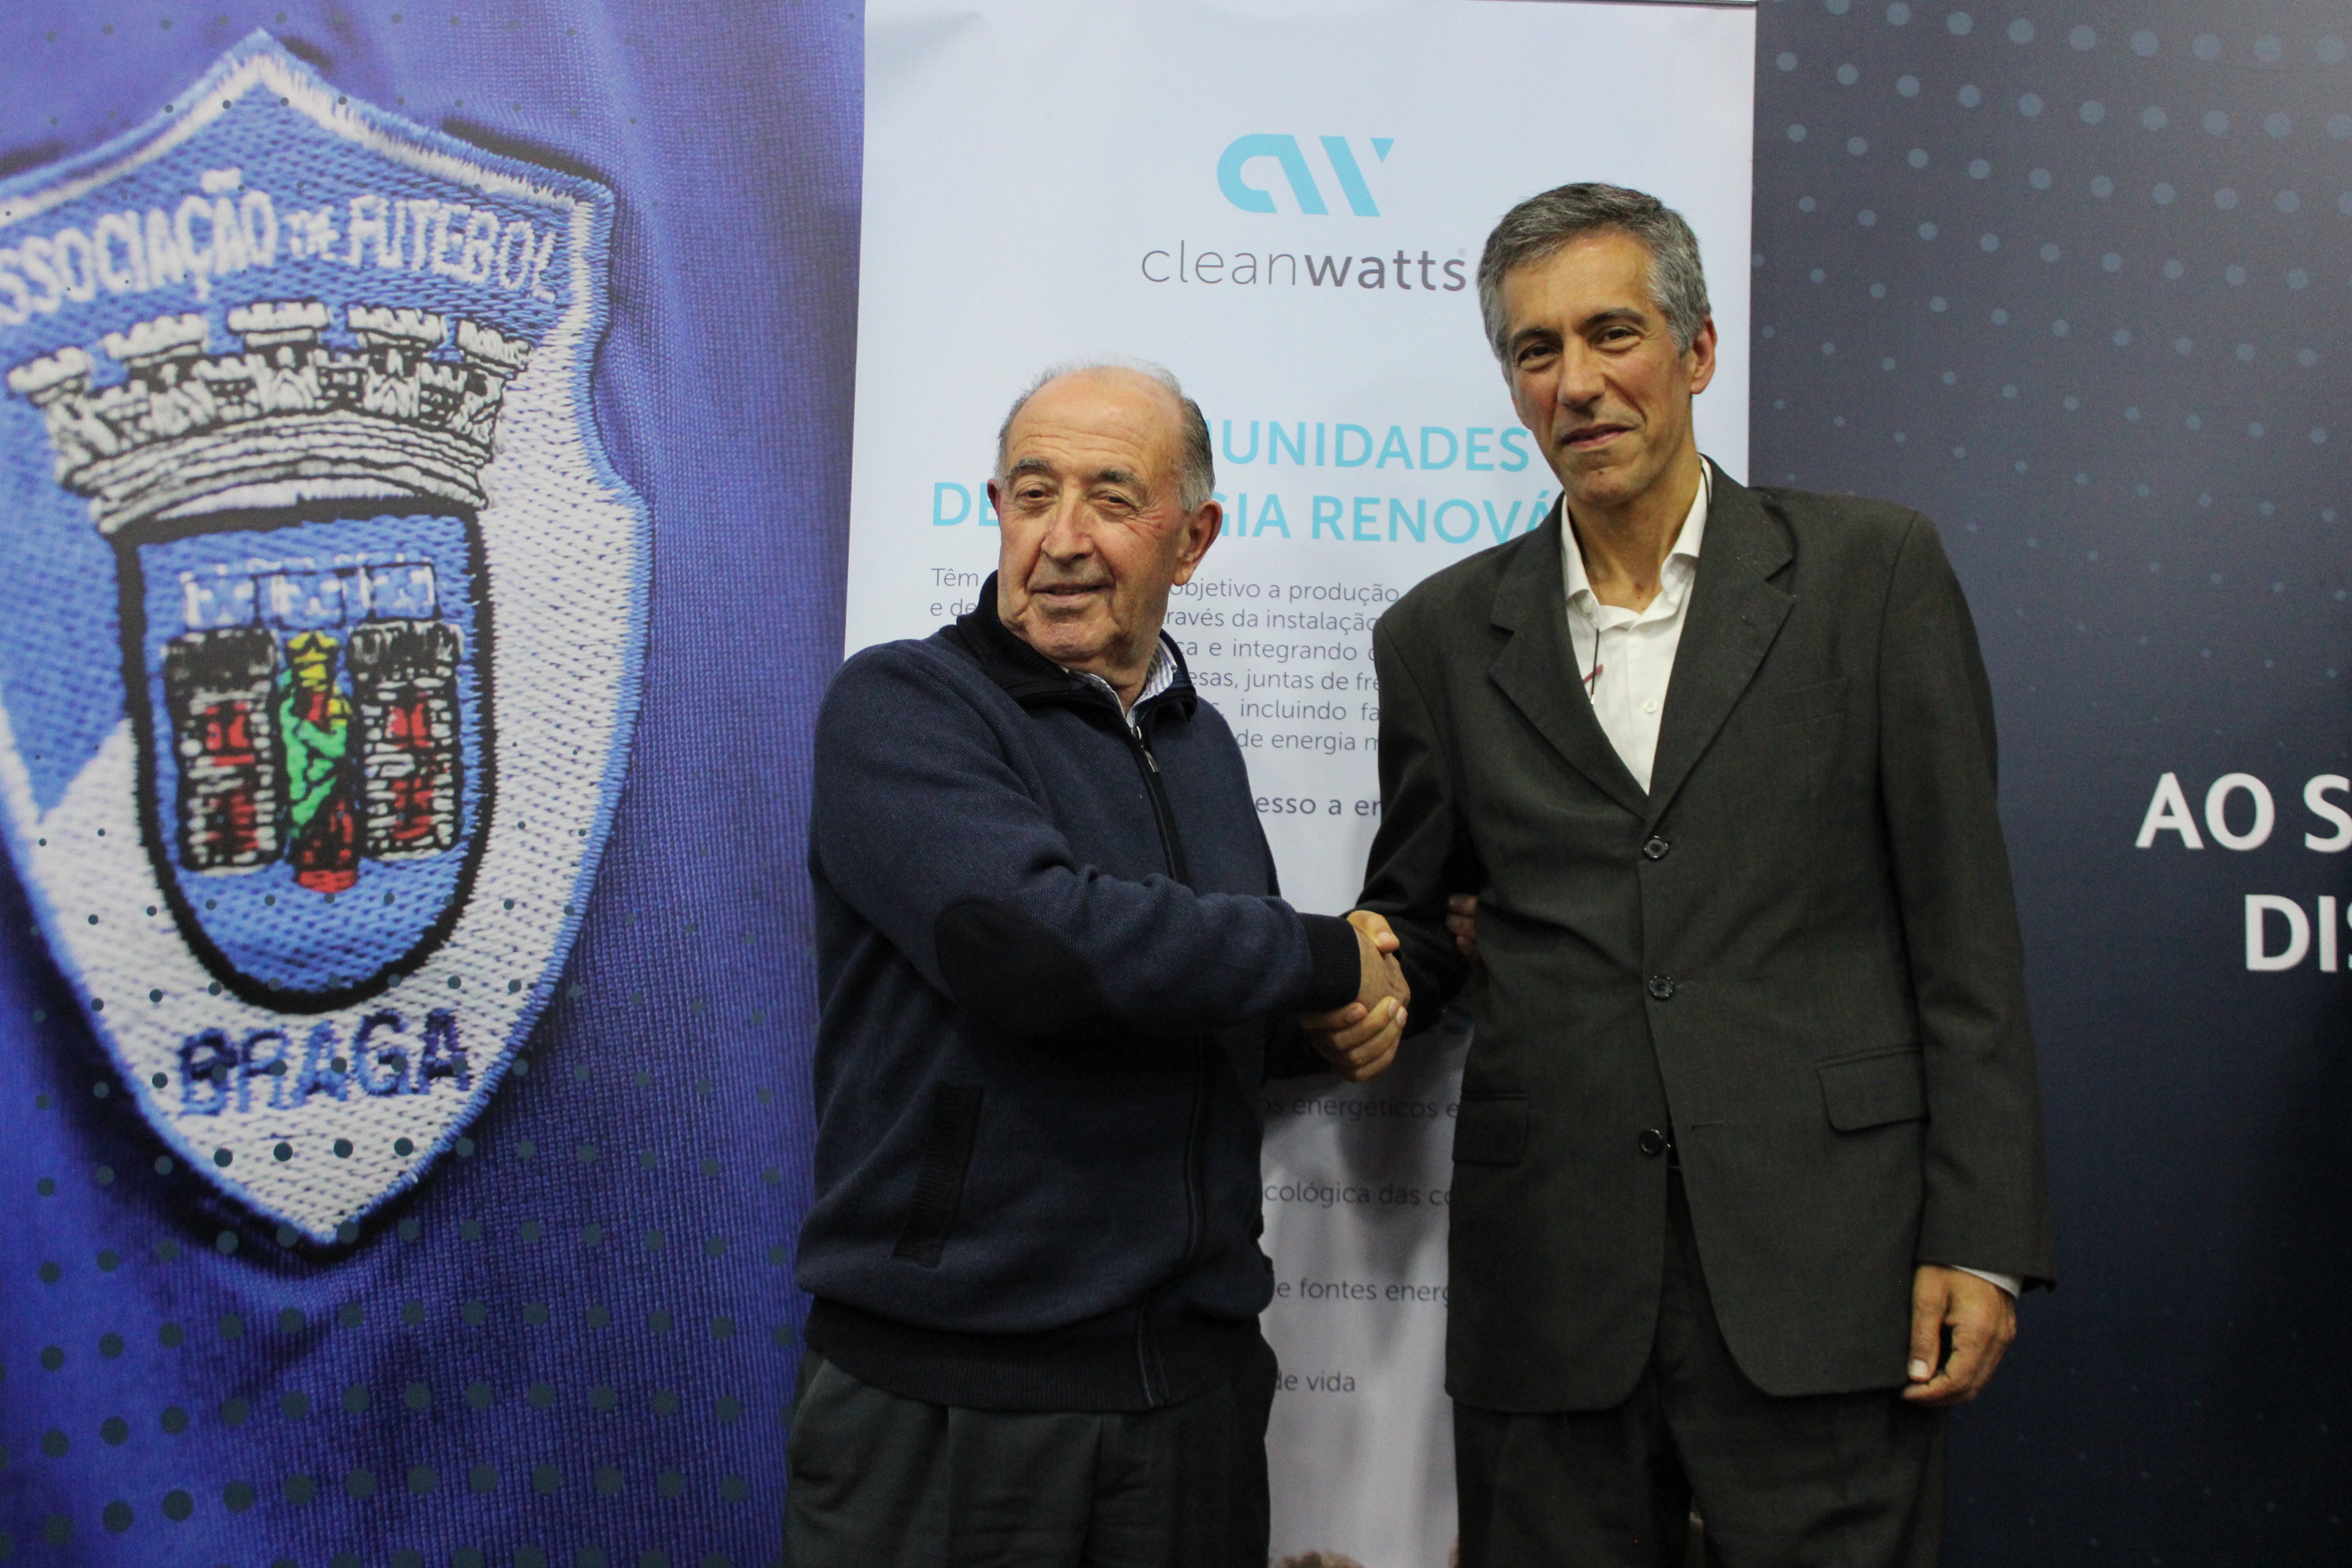 Cleanwatts cria Comunidade de Energia Renovável com a Associação de Futebol de Braga